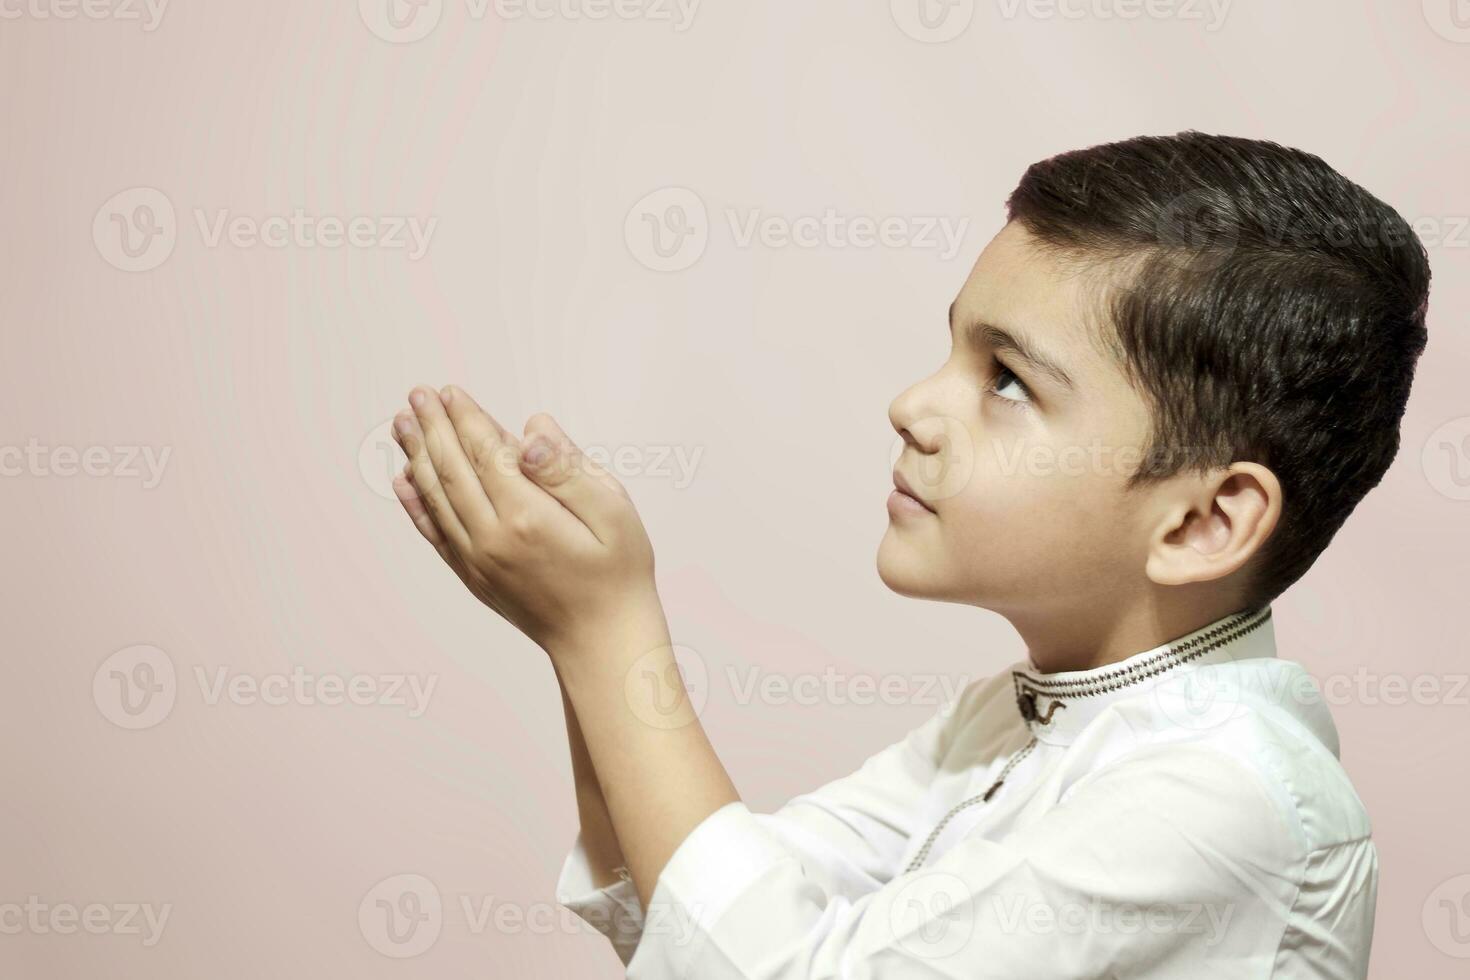 Praying muslim boy photo